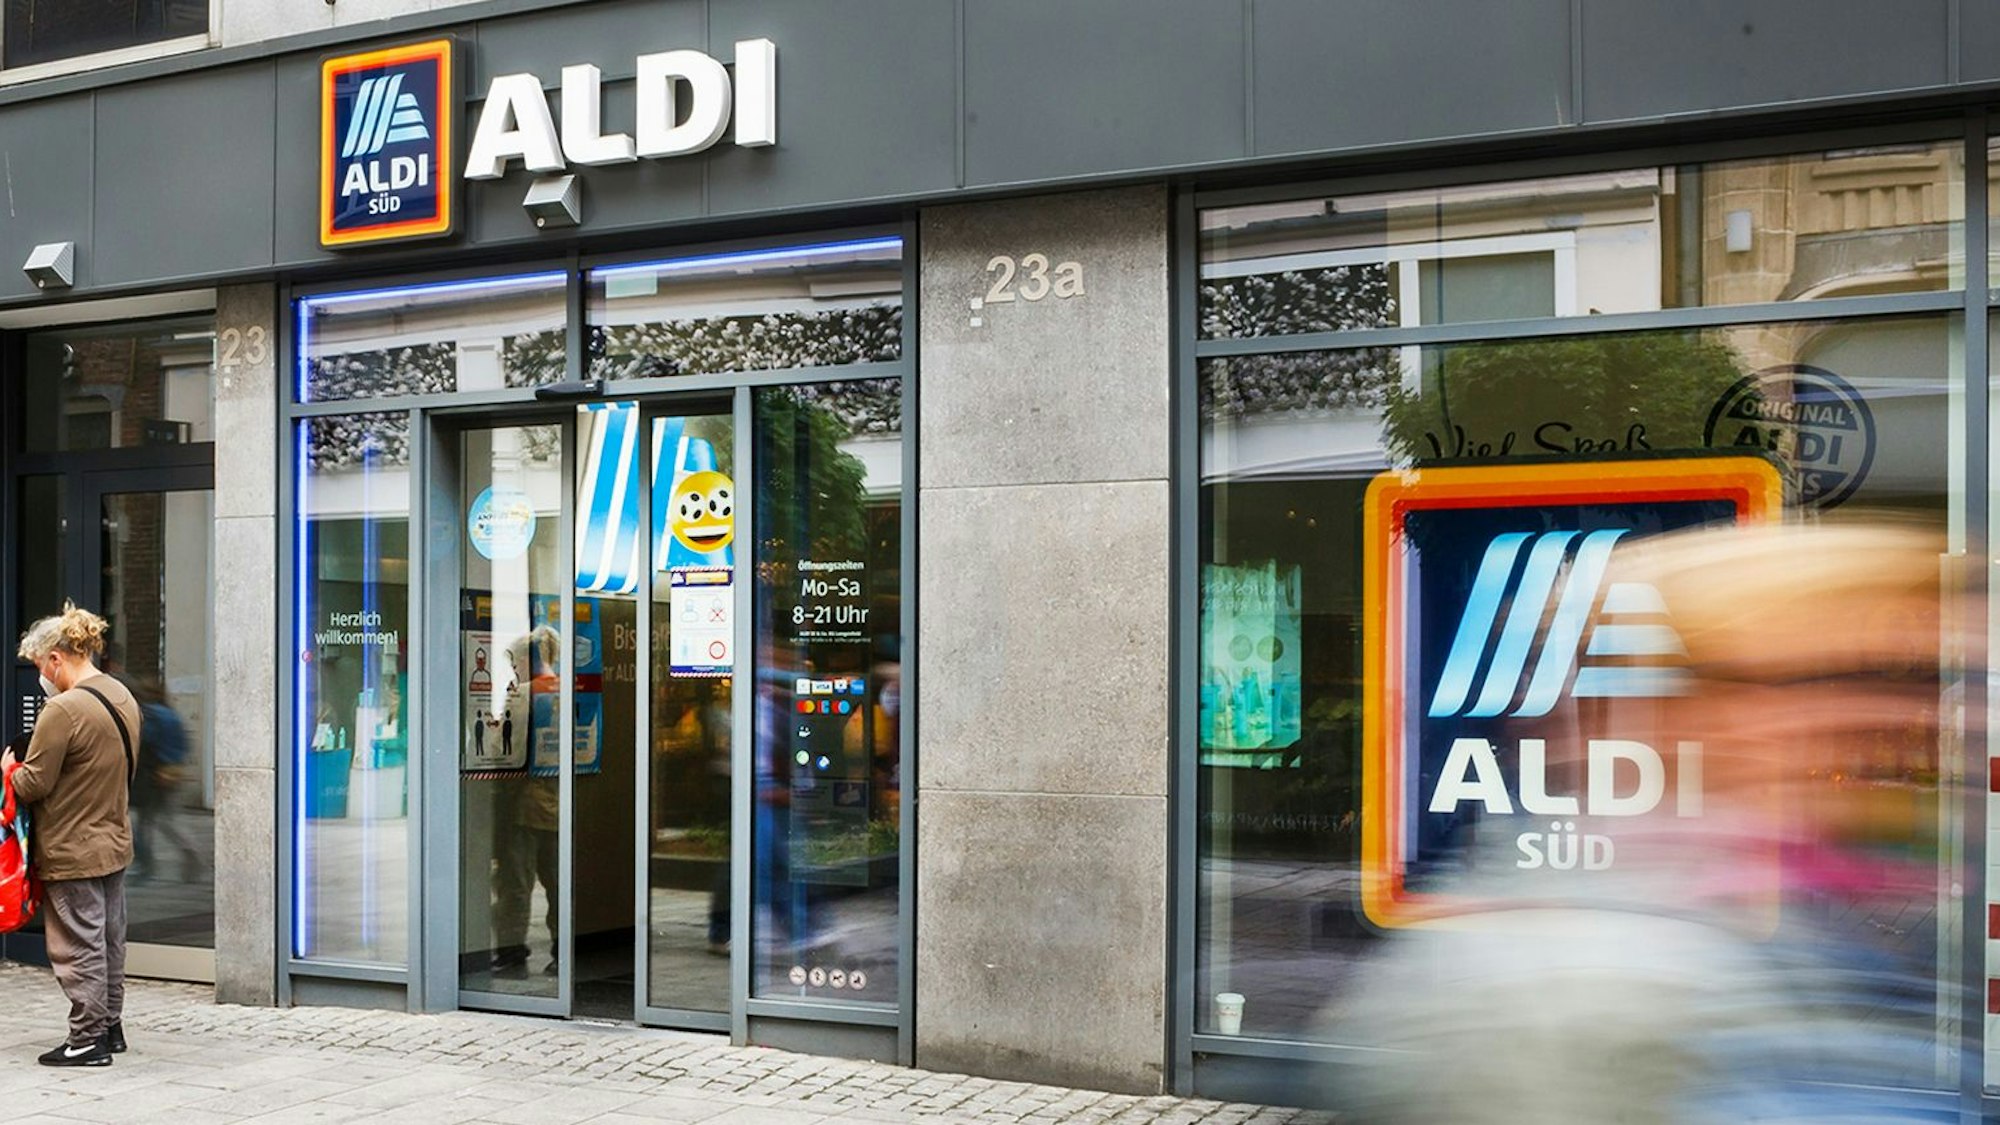 Die ALDI SÜD Filiale in der Düsseldorfer Altstadt. Das Symbolbild wurde am 5. Juli 2021 aufgenommen.